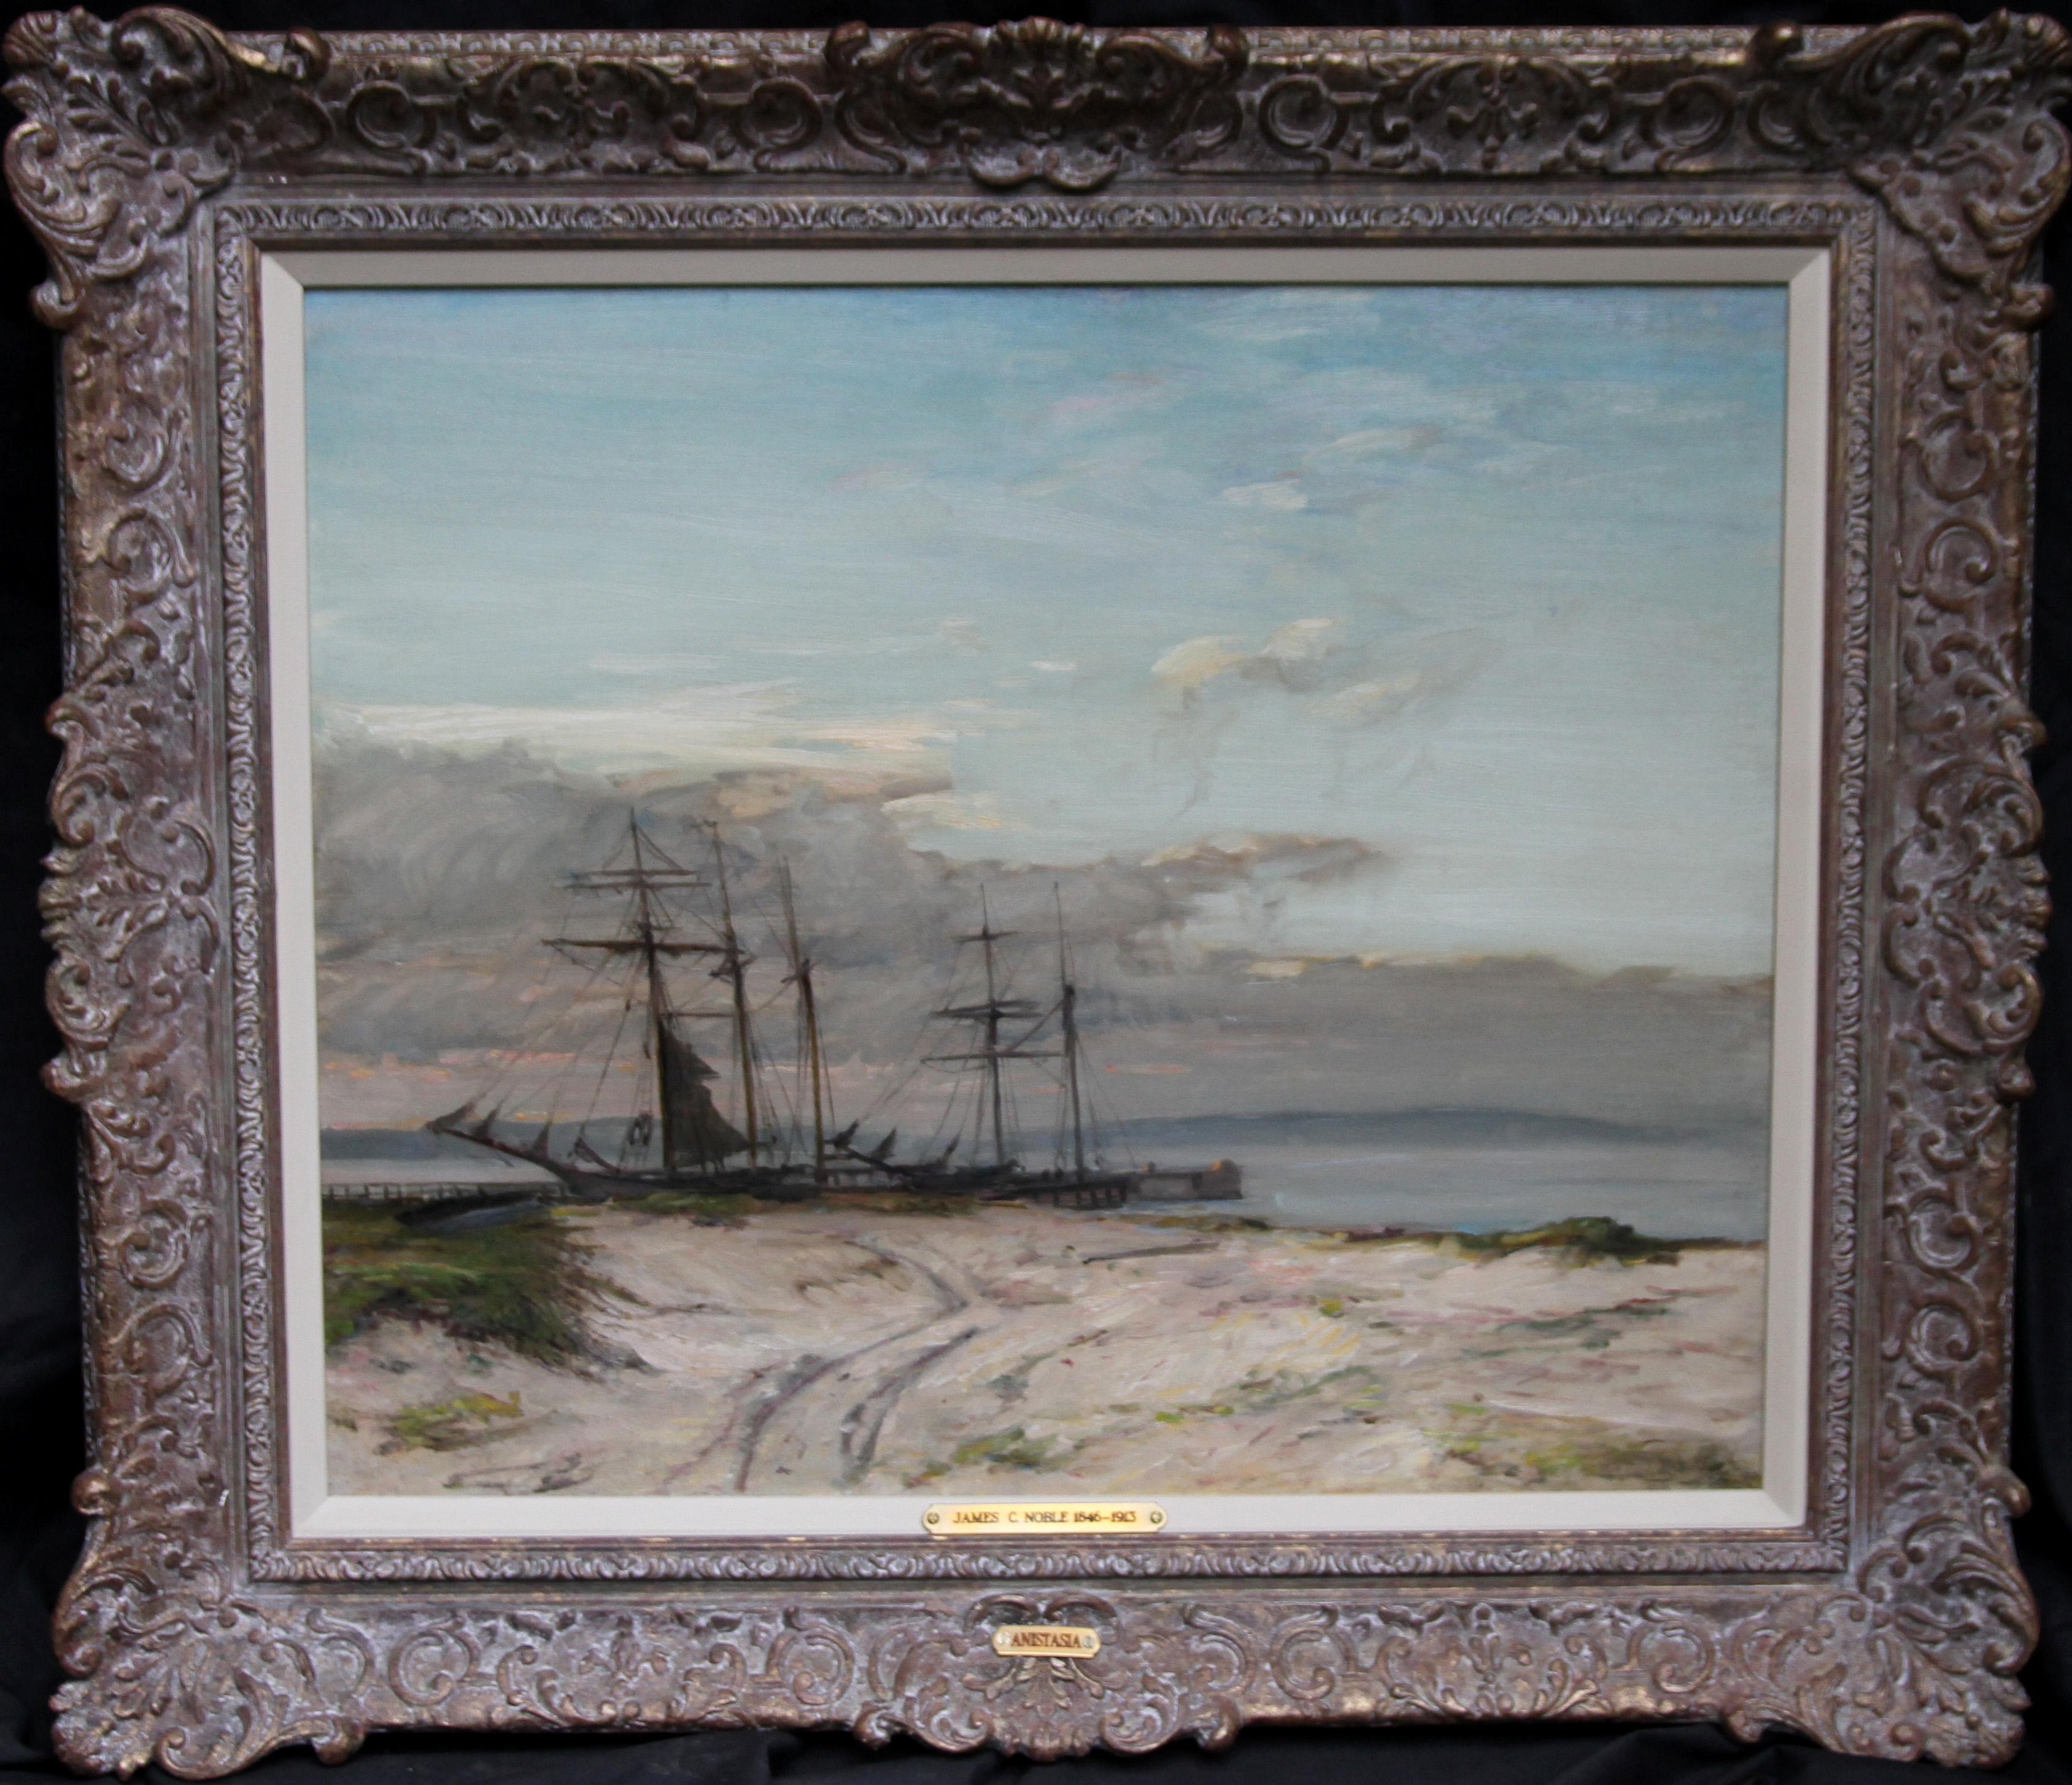 Landscape Painting James Campbell Noble - The Anastasia - peinture à l'huile impressionniste écossaise de 1911, art marin norvégien